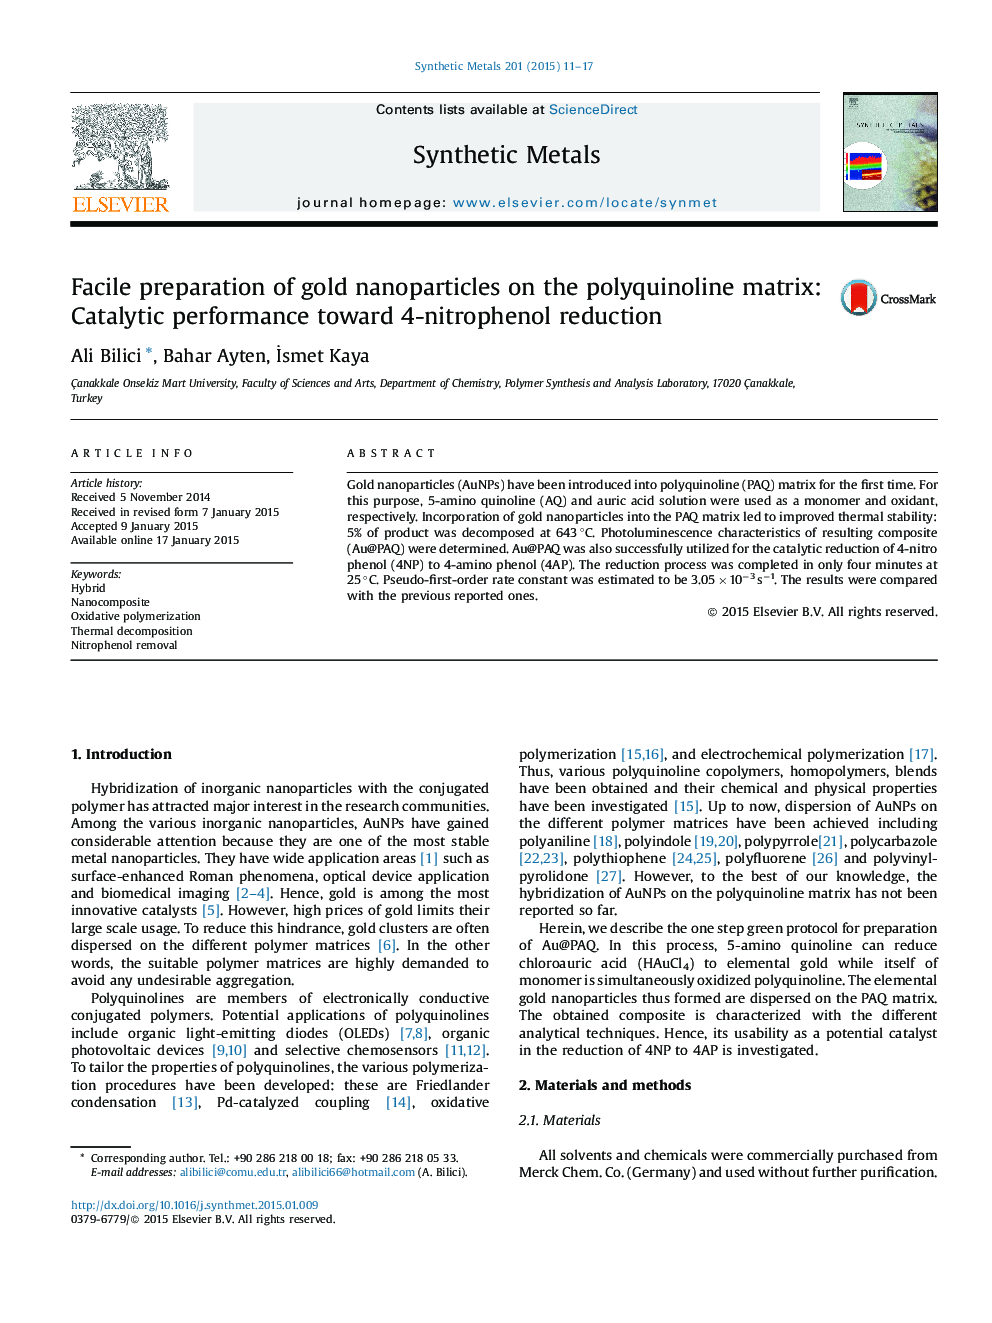 آماده سازی چسبندگی نانوذرات طلا در ماتریکس پلی کینولین: عملکرد کاتالیزوری نسبت به کاهش 4 نیتروفنول 